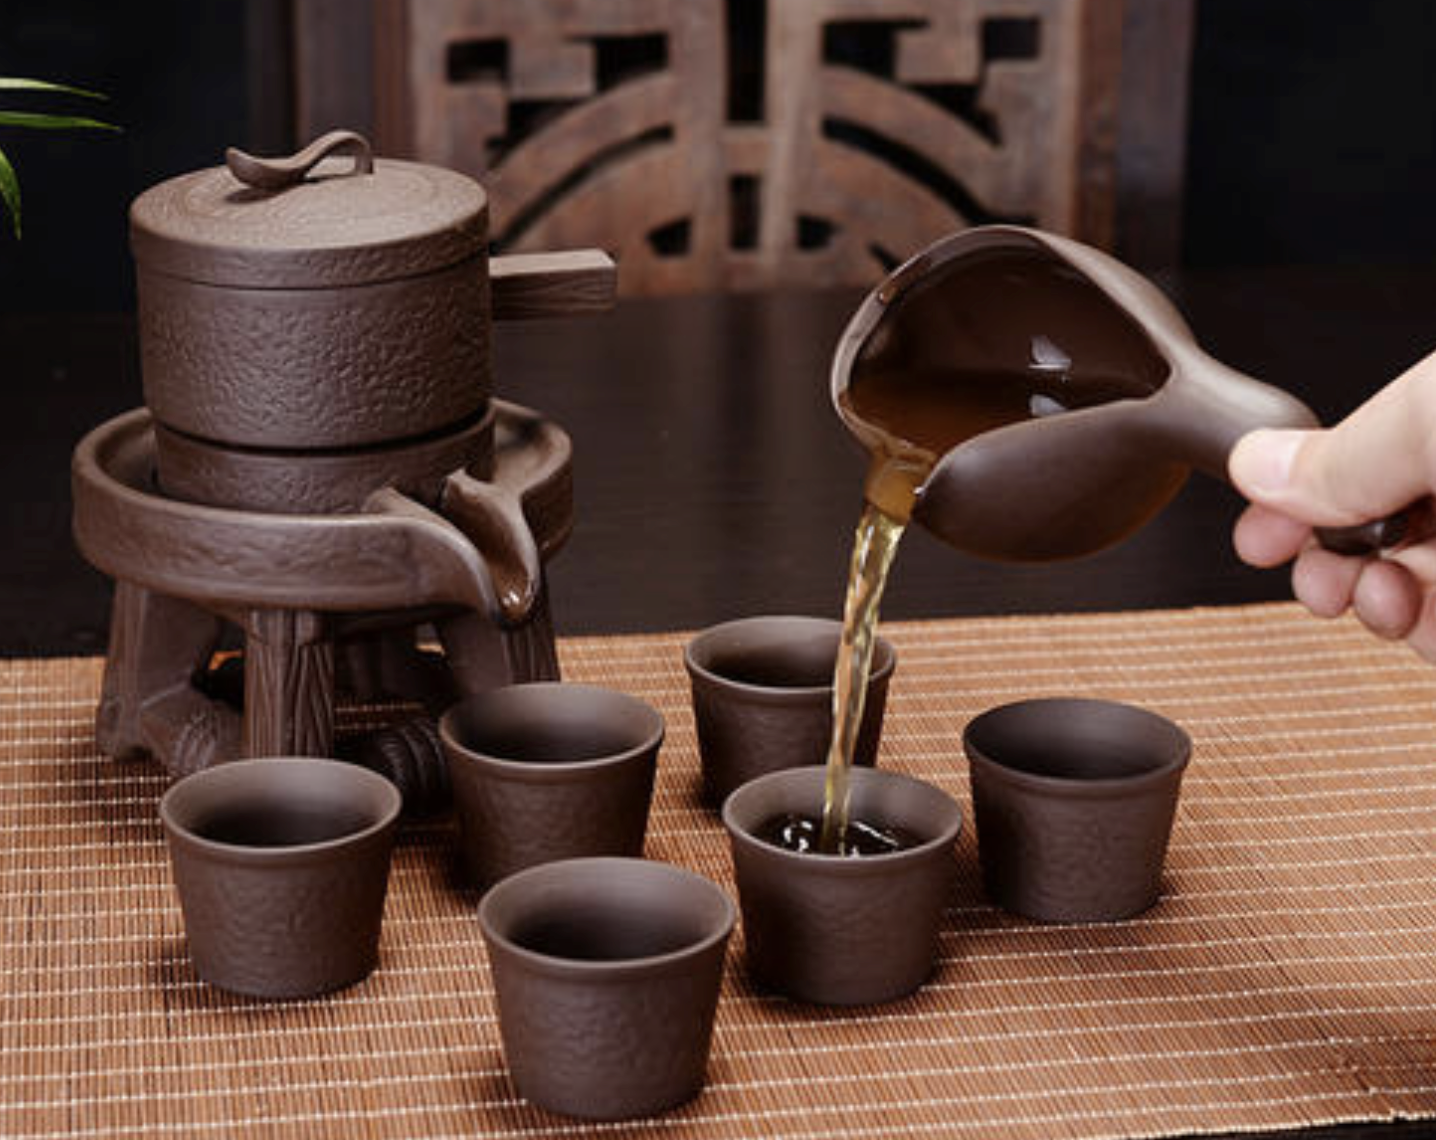 懒人茶具推荐2021年十款超好看的家用茶具